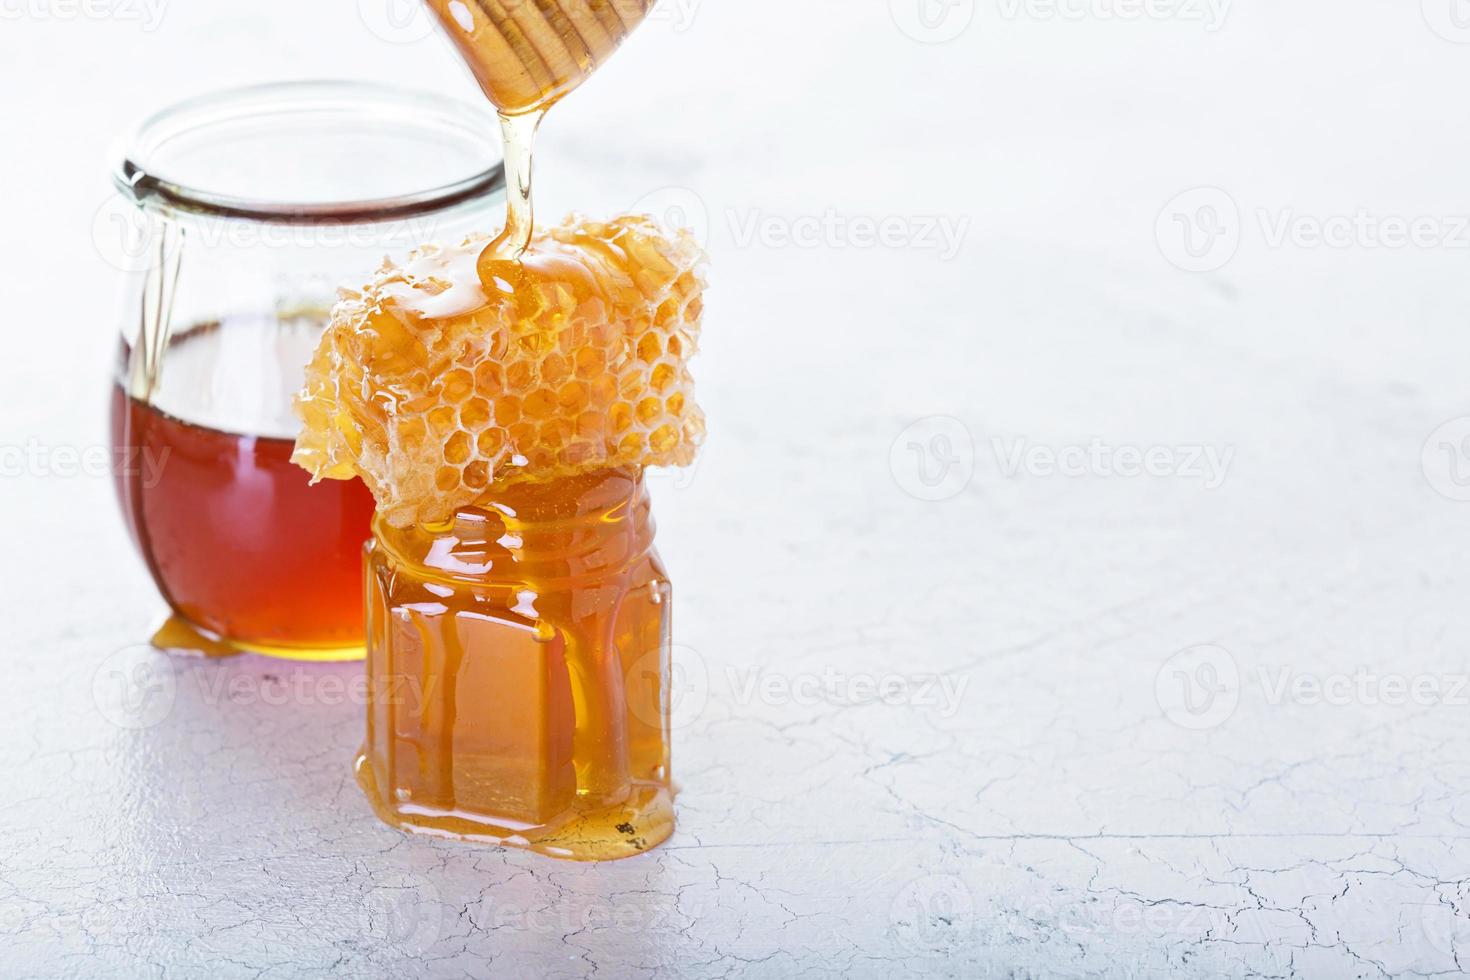 tarro de miel y panal foto